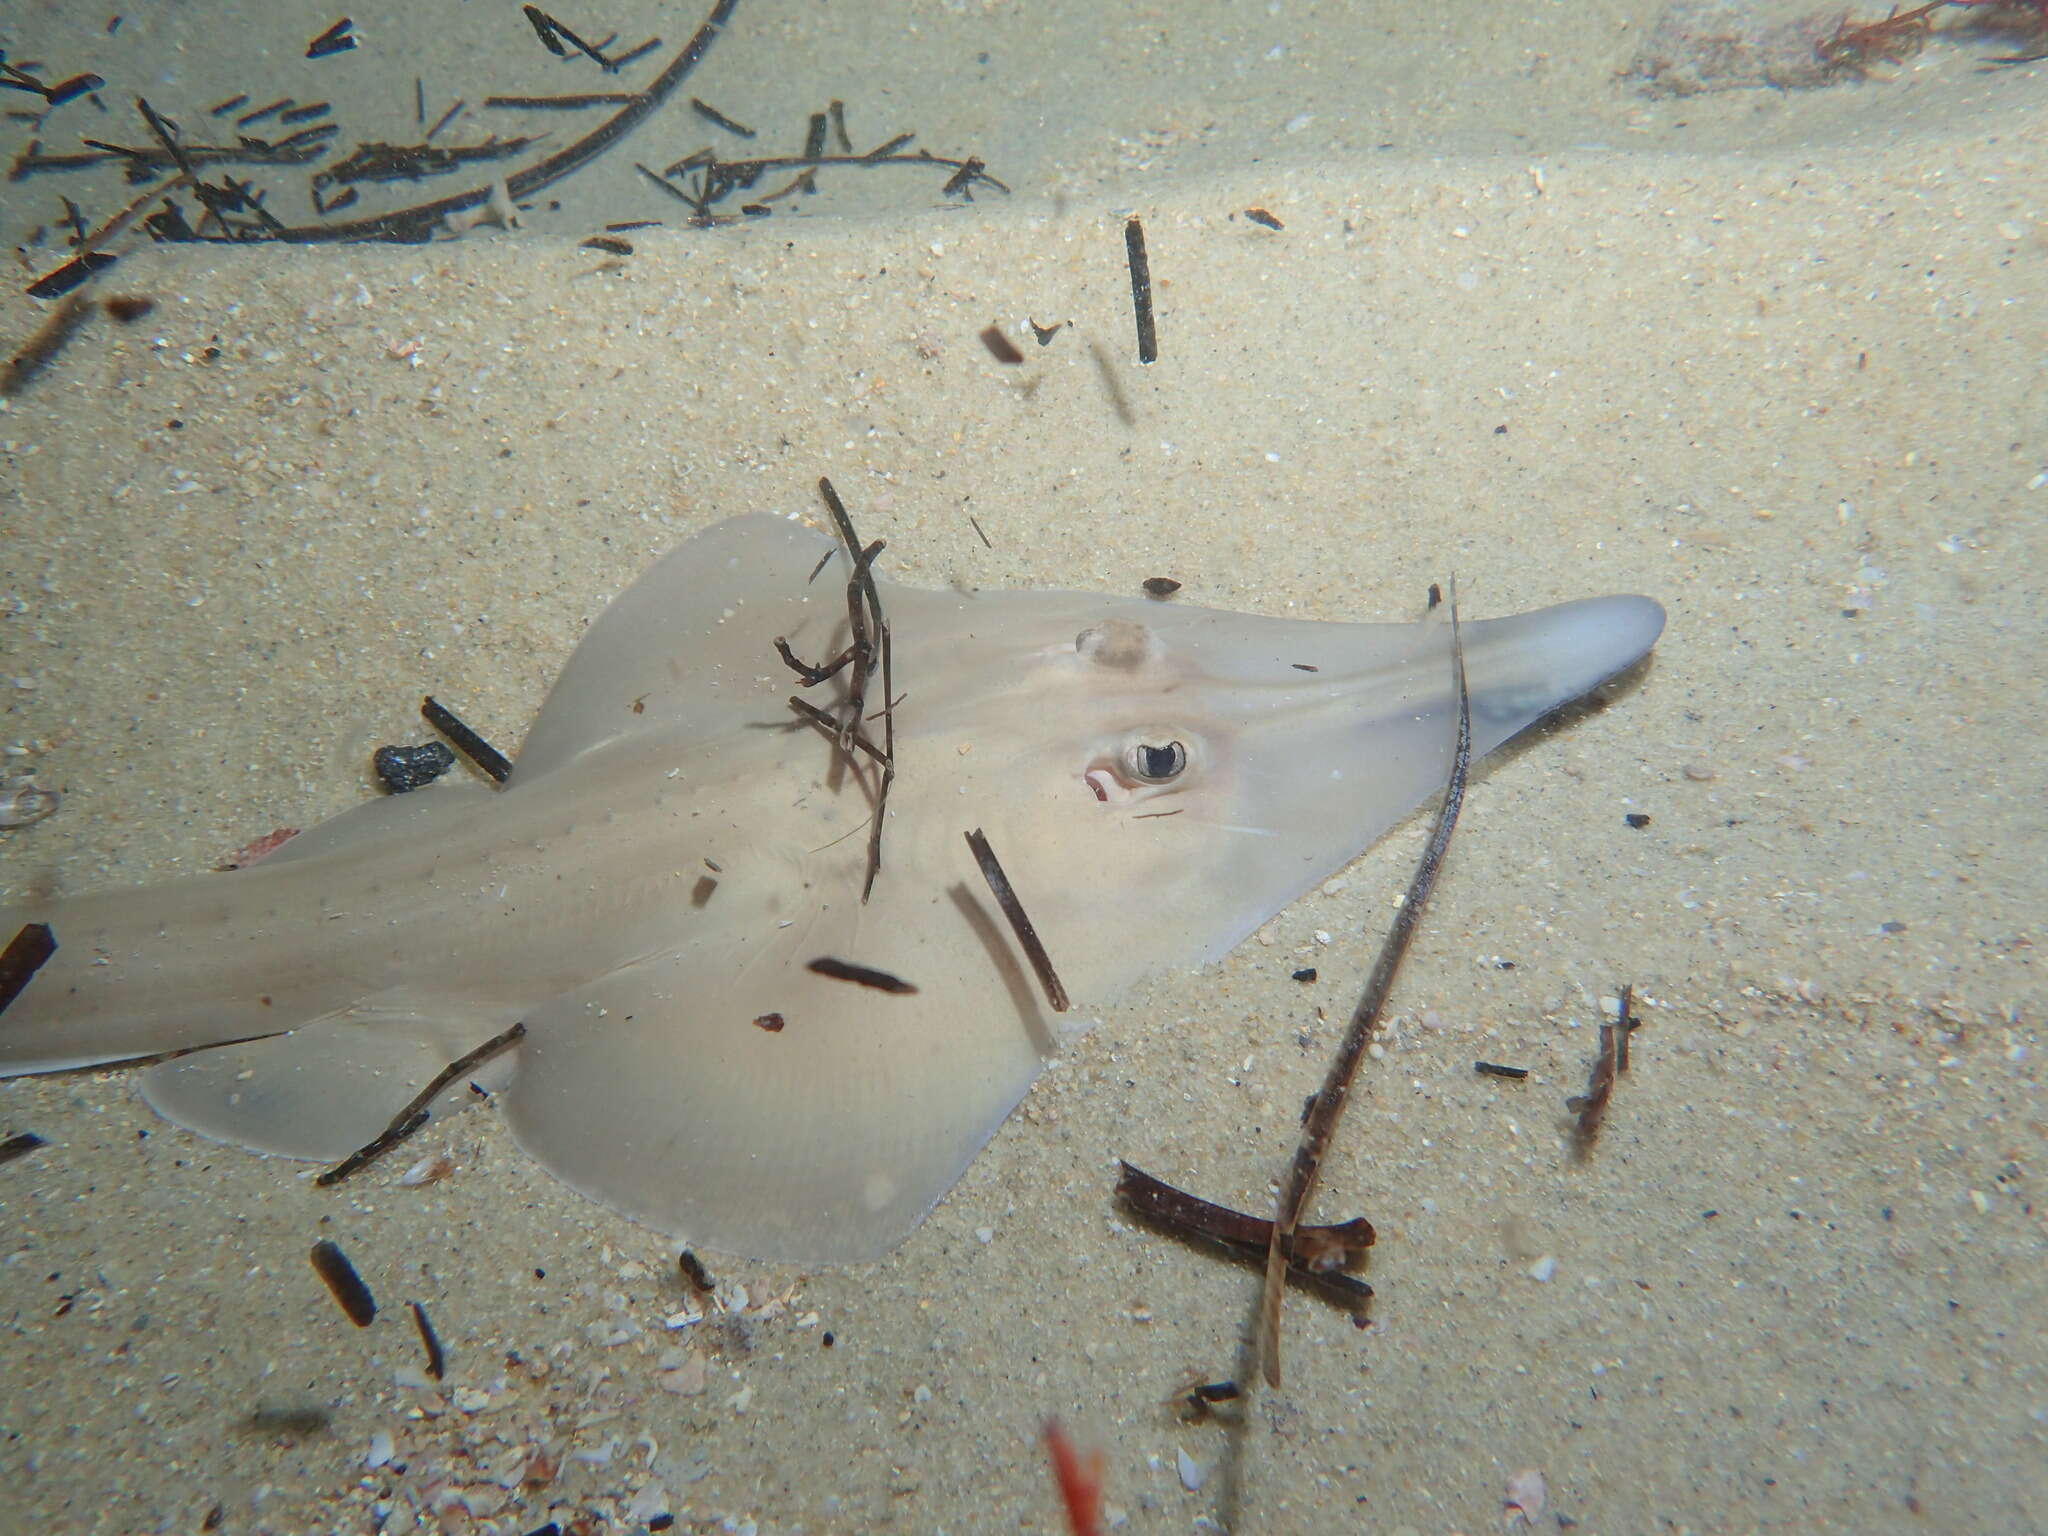 Image of Guitarfish